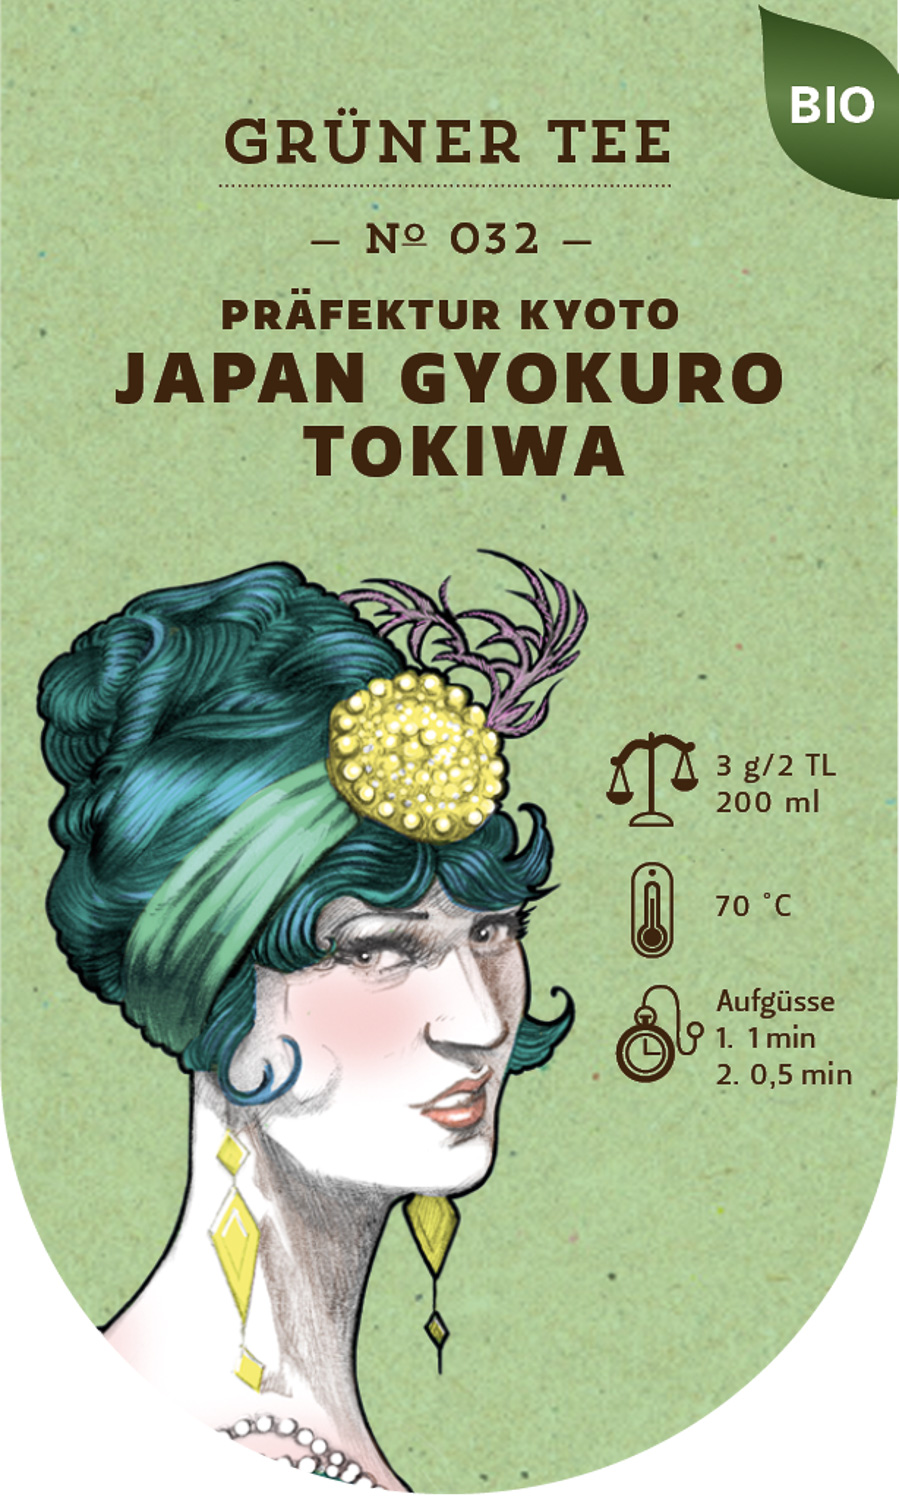 Japan Gyokuro Tokiwa BIO №032